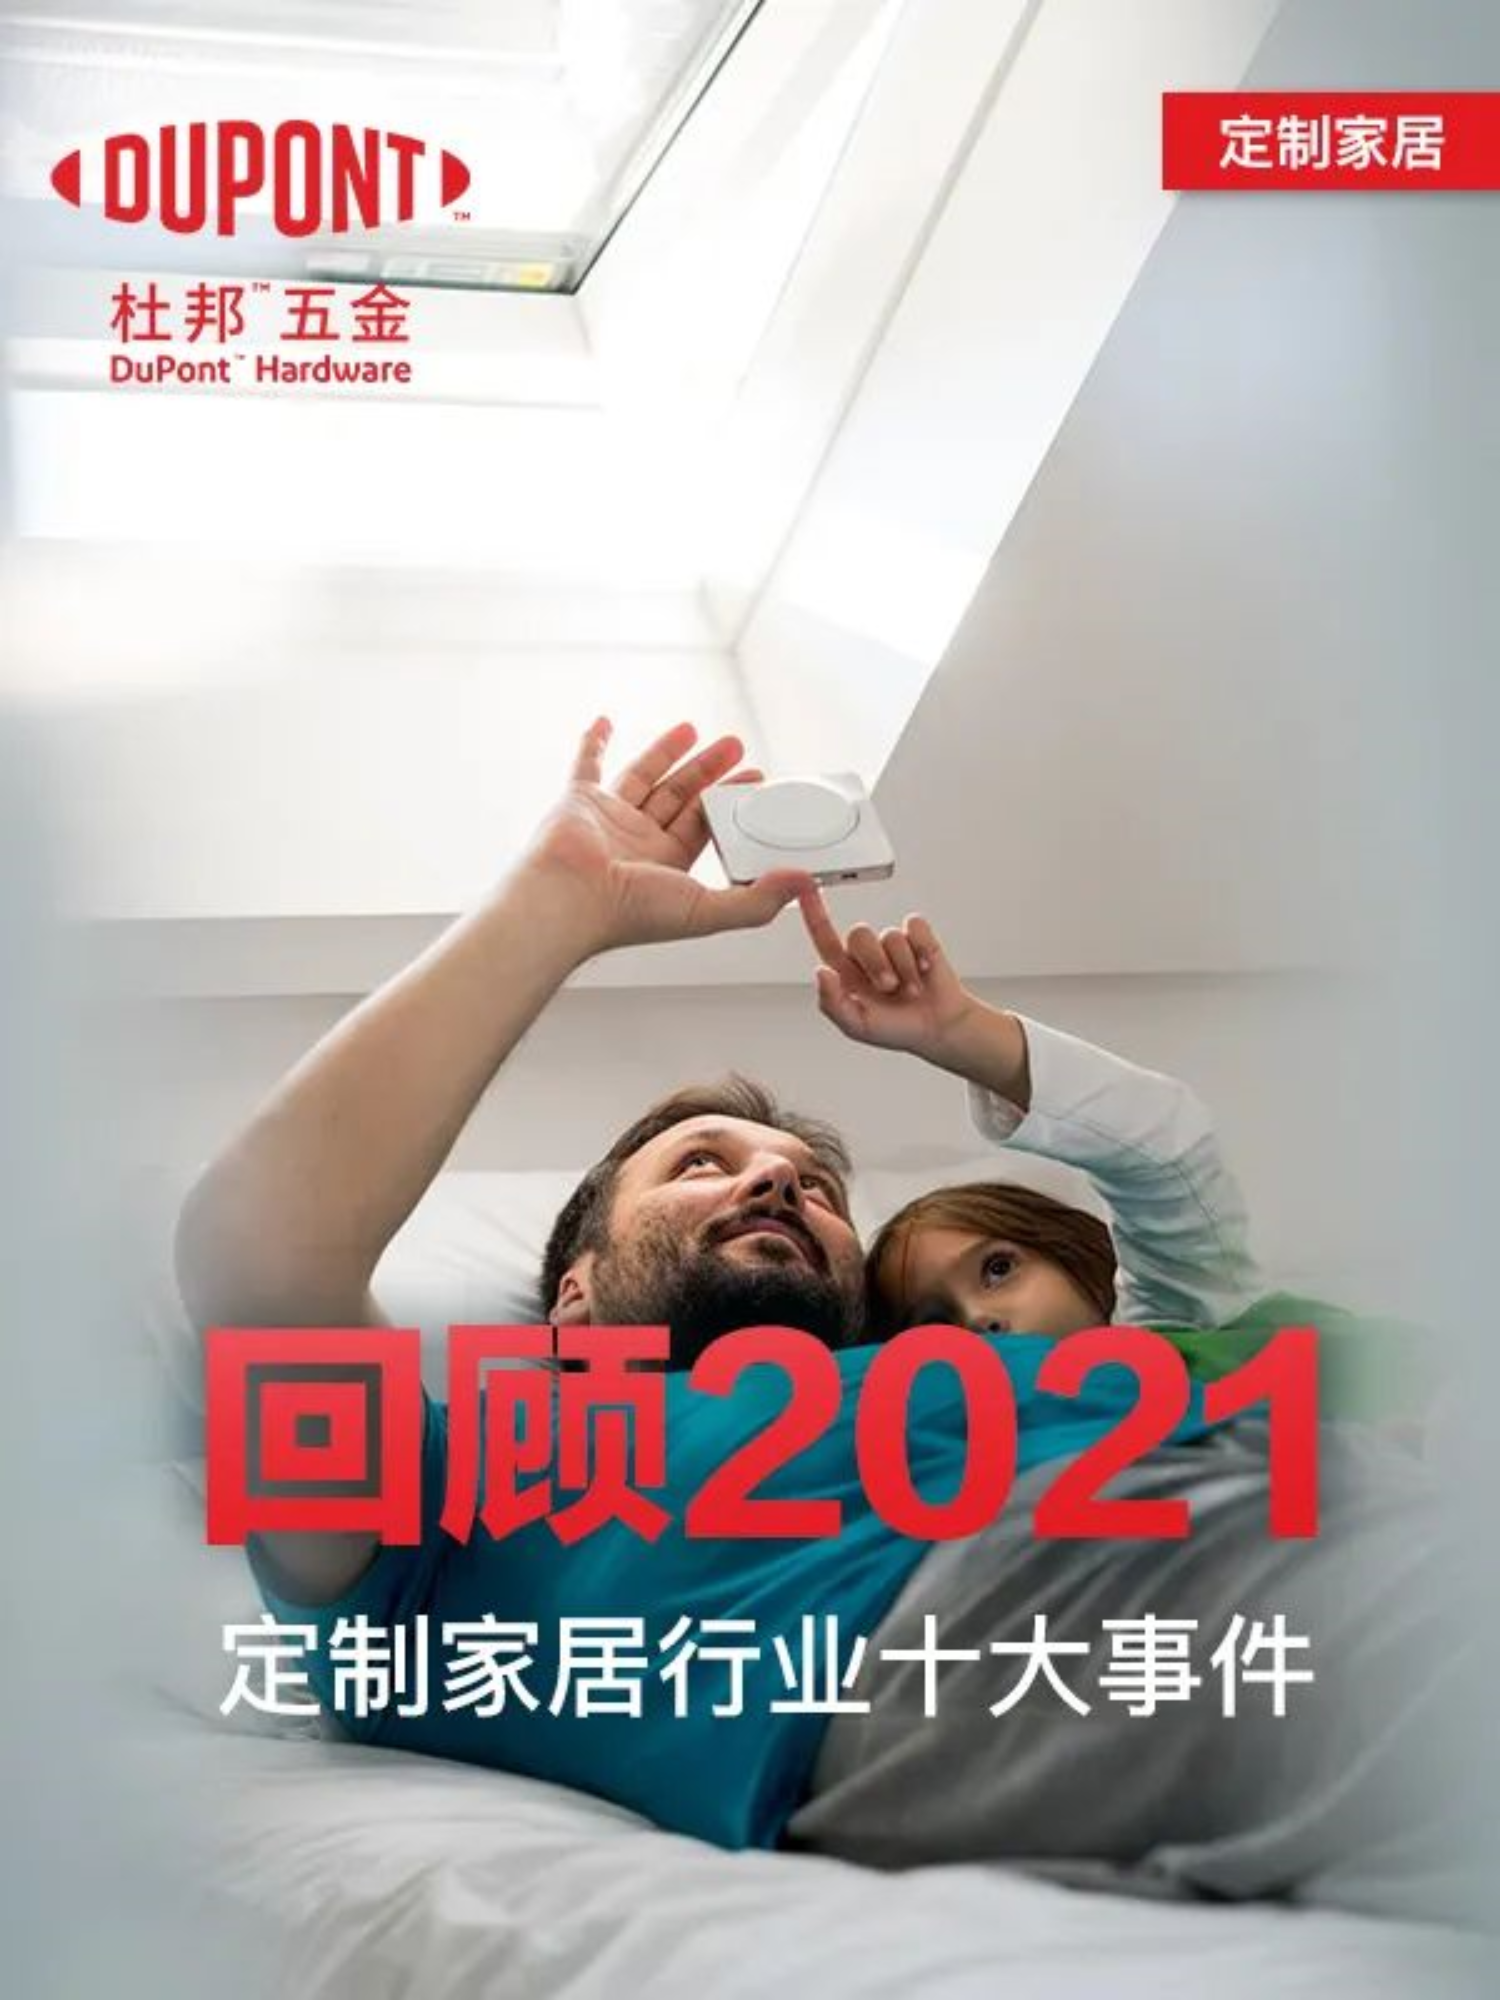 10'de Çin'deki En İyi 2021 Özelleştirilmiş Ev Mobilyasının İncelenmesi!